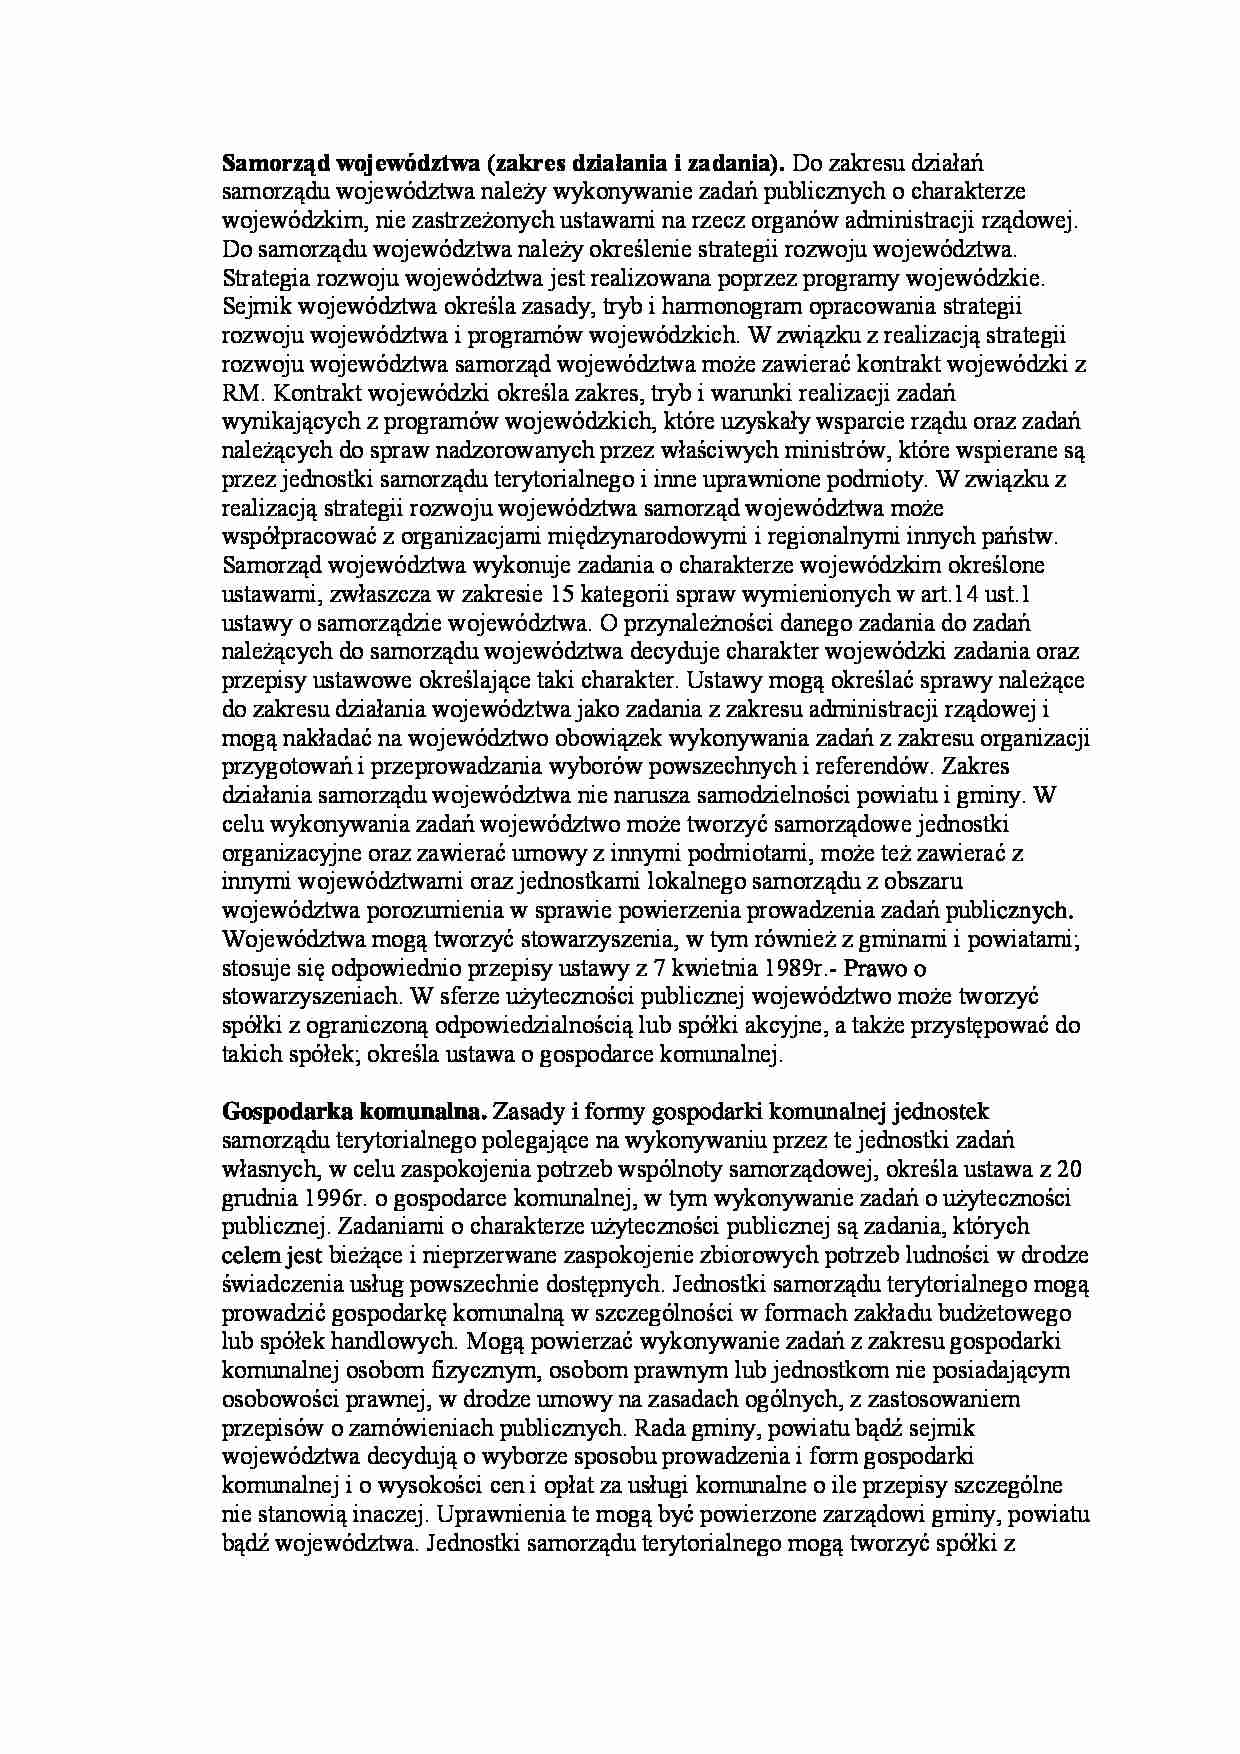 Samorząd województwa - zakres działania i zadania - strona 1